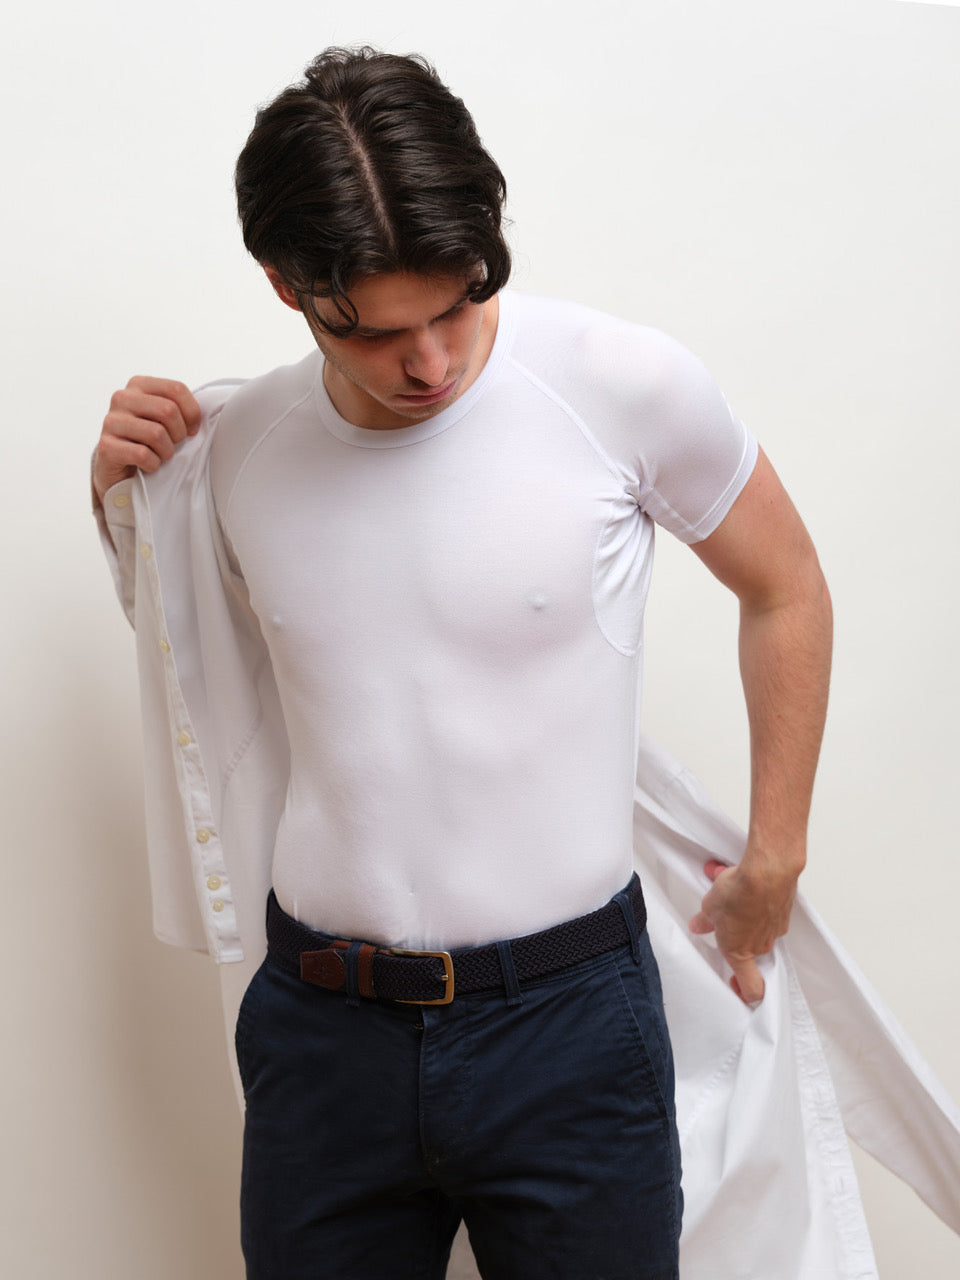 Homme portant un maillot de corps blanc à col rond